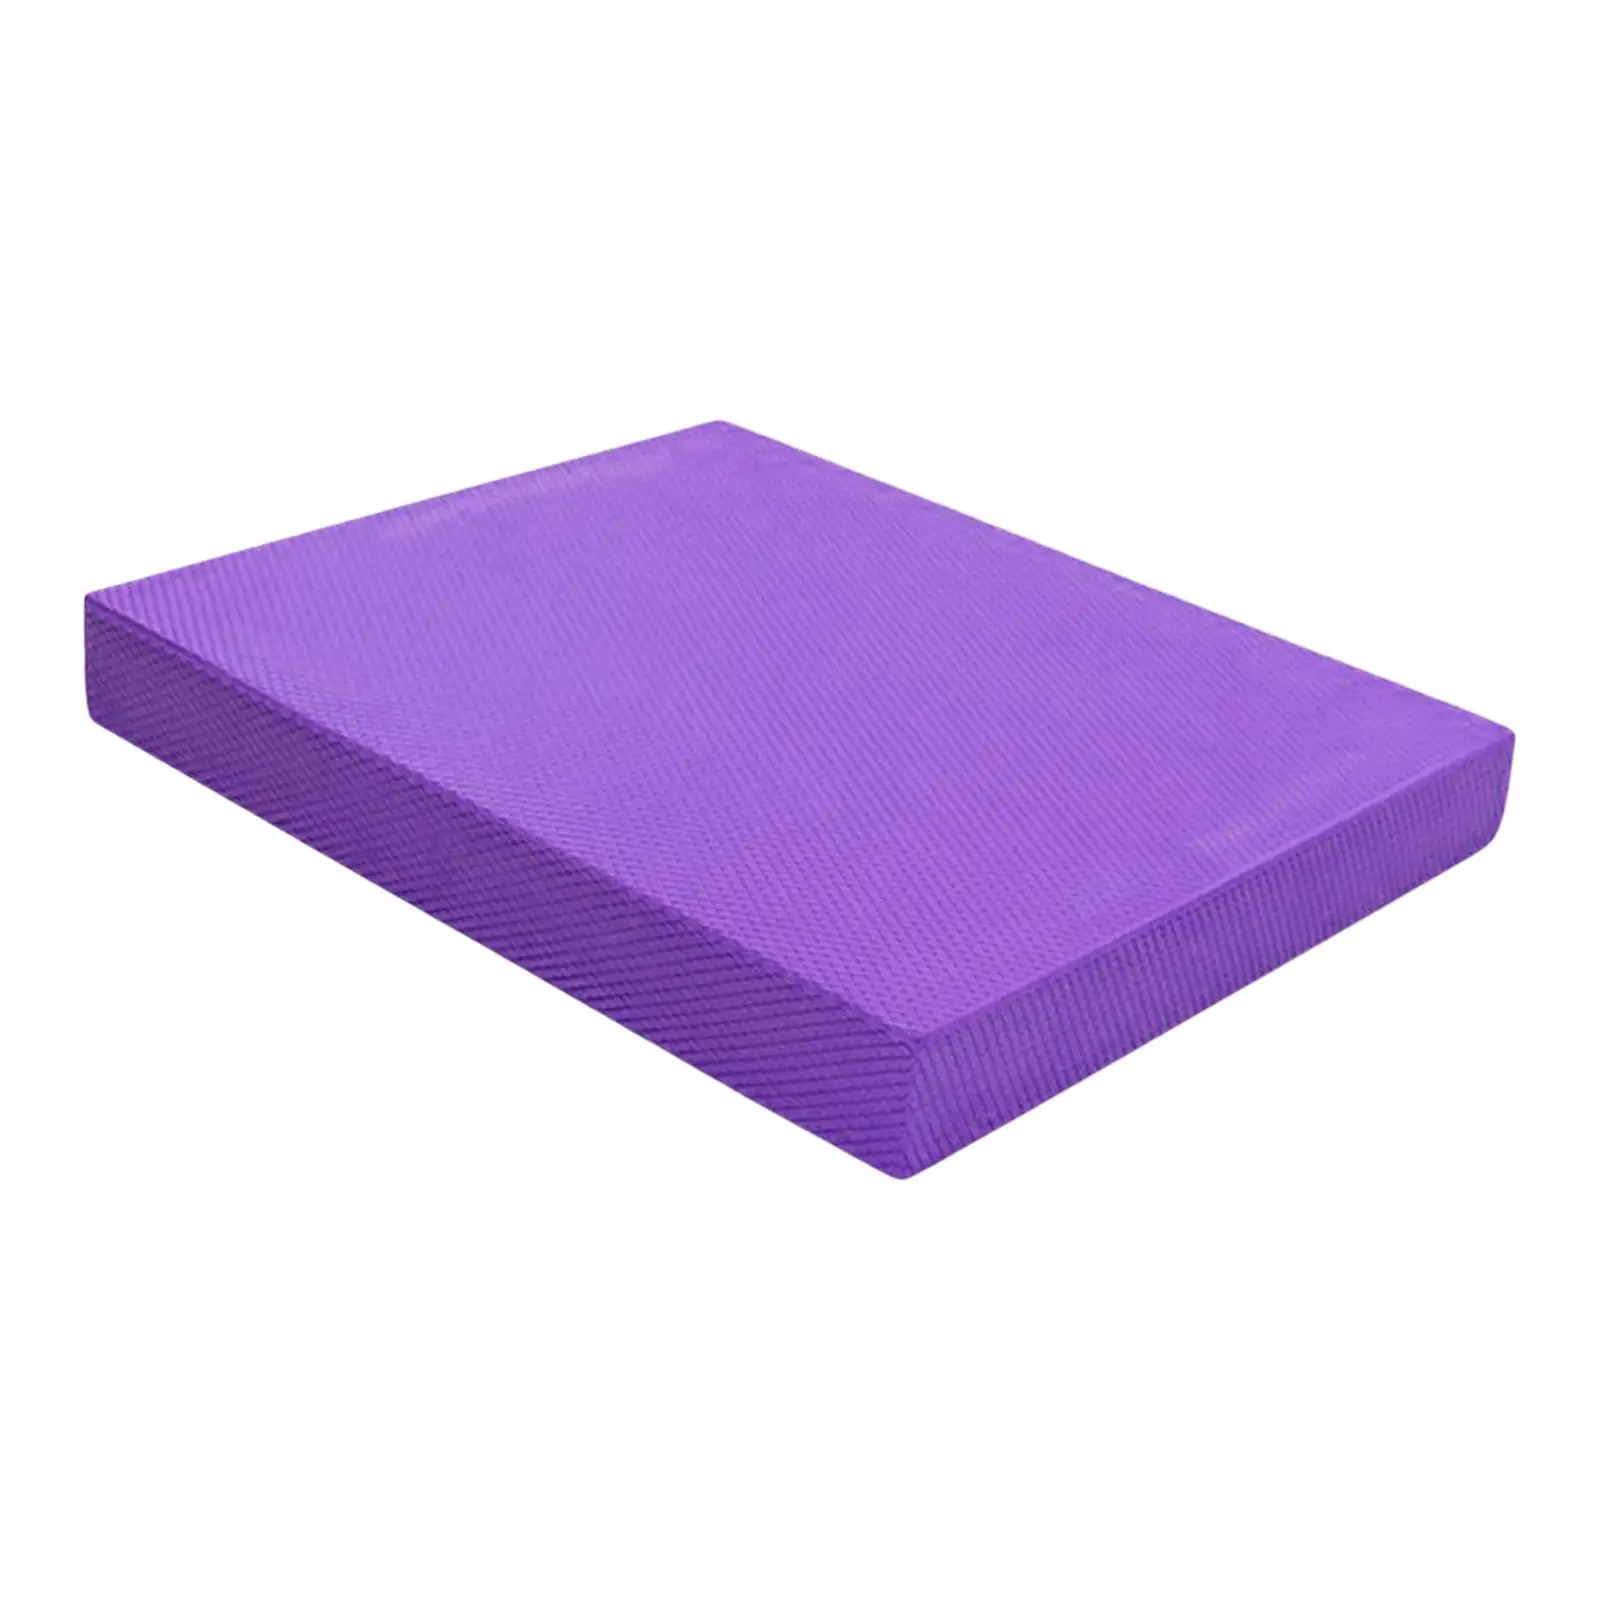 Balance Pad Foam Mat Yoga Mat Anti Tear, Balance Board, Balance Cushion Knee Pad